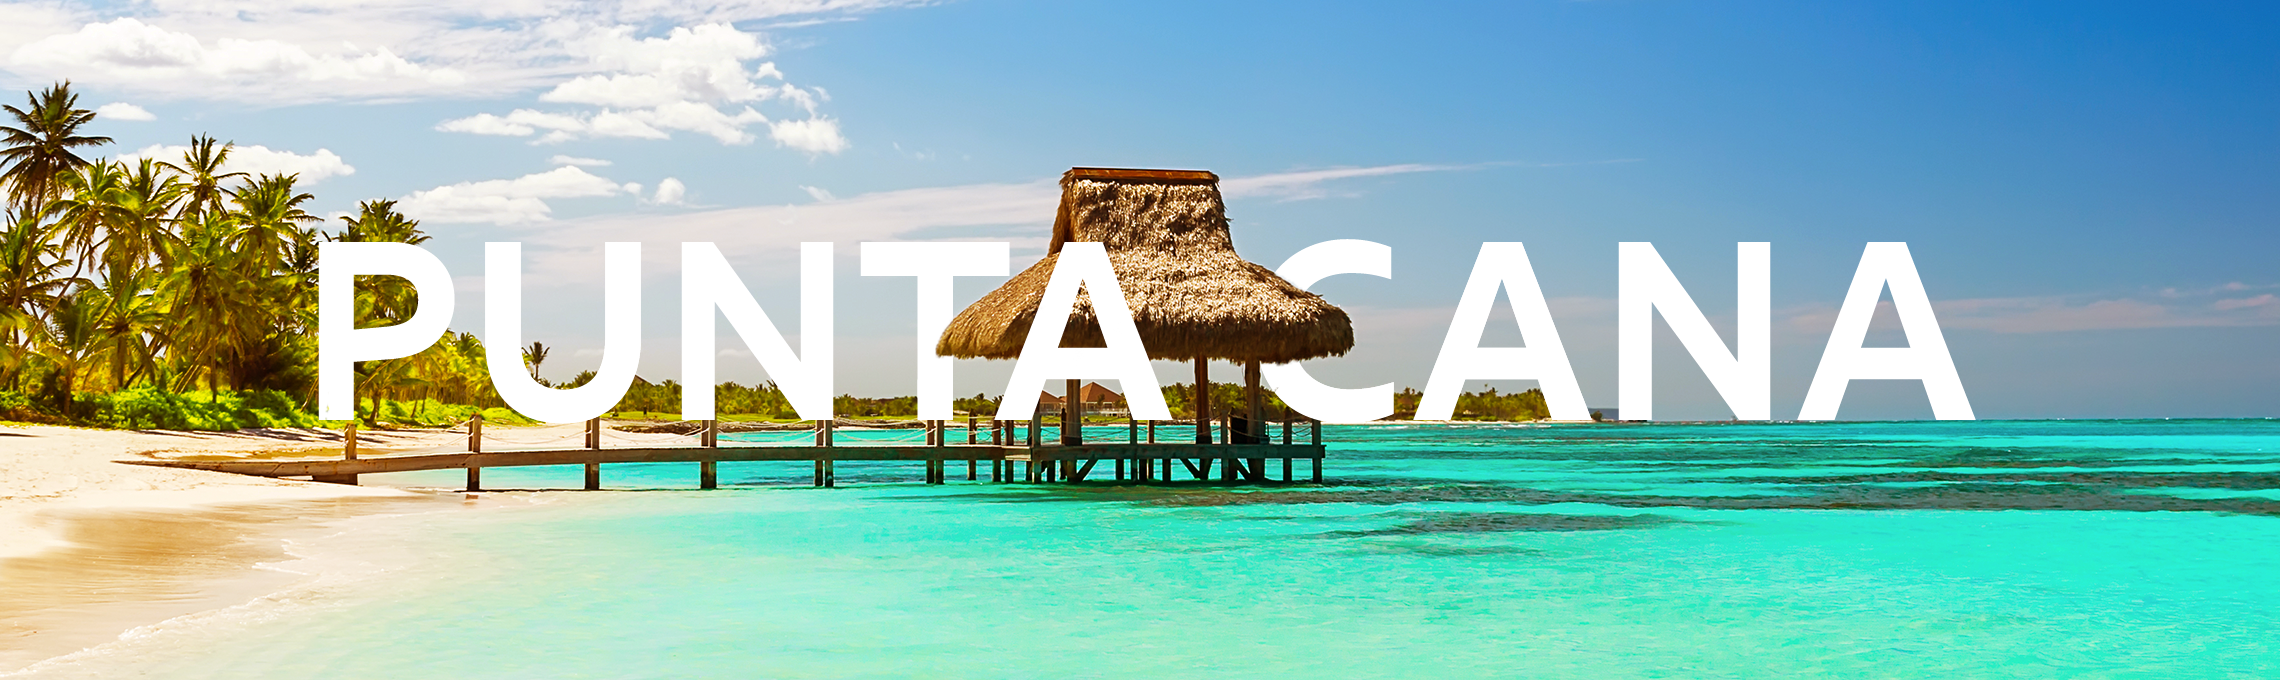 Praia de Punta Cana, com o mar esverdeado, deque e cobertura de palha, com a palavra Punta Cana escrita em letras garrafais na imagem toda.